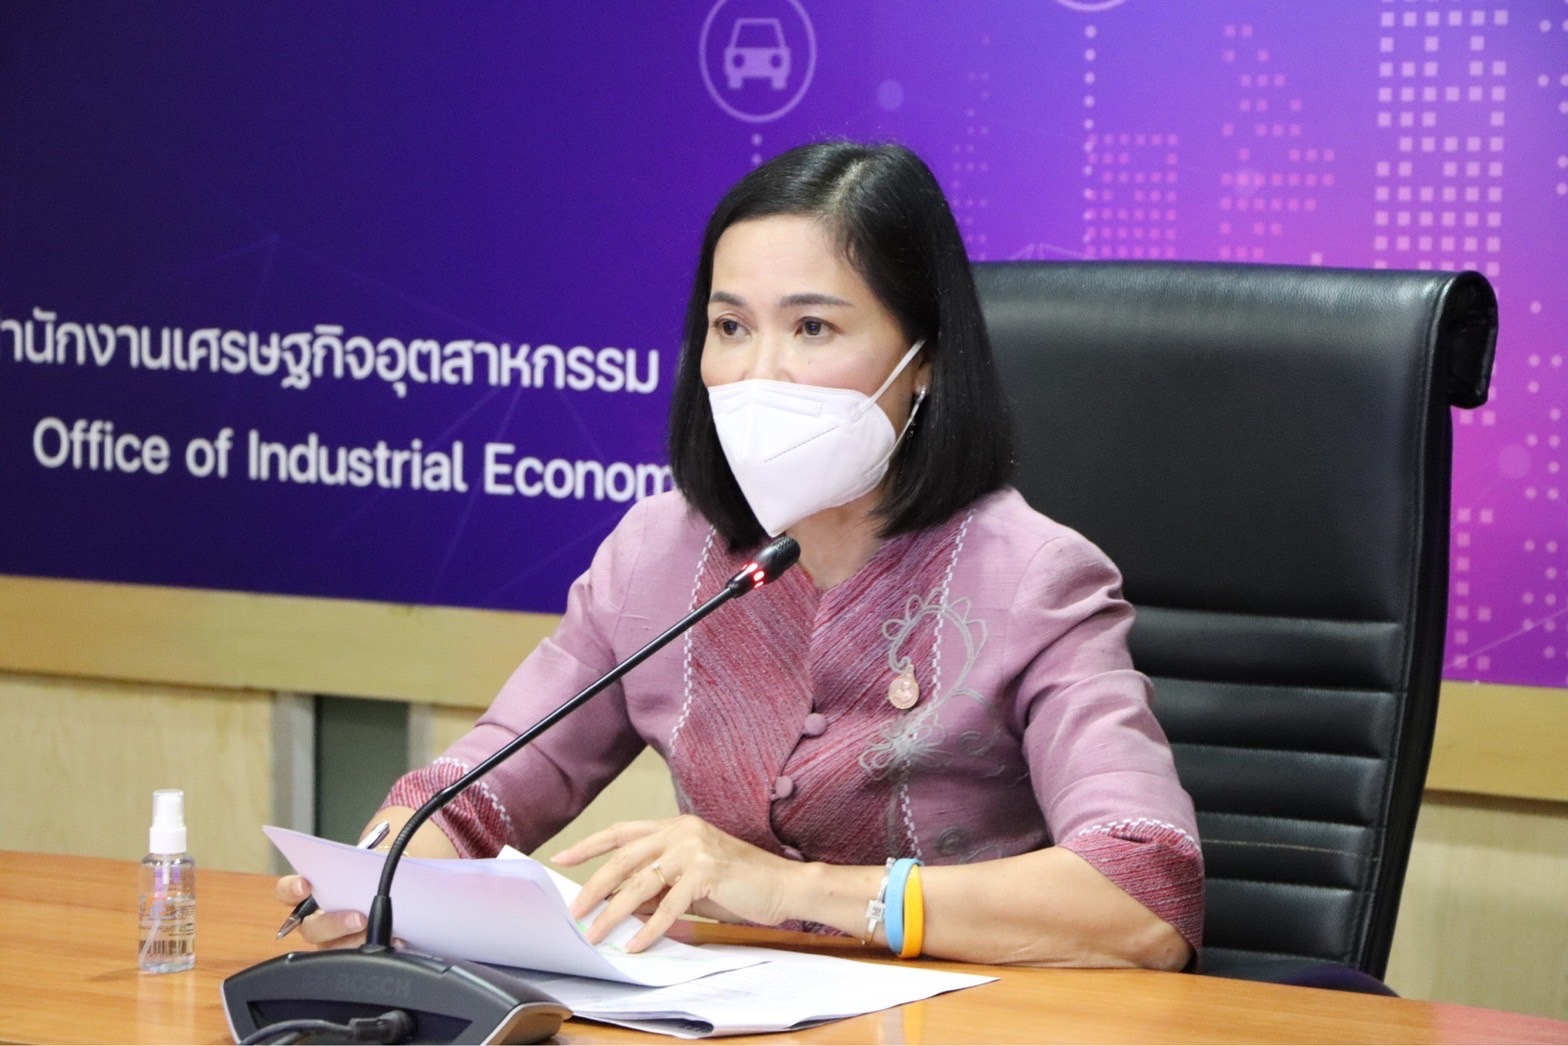 การระดมความคิดเห็น Focus group (online) “Thai Hemp กับการสร้างโอกาสธุรกิจสิ่งทอไทย”